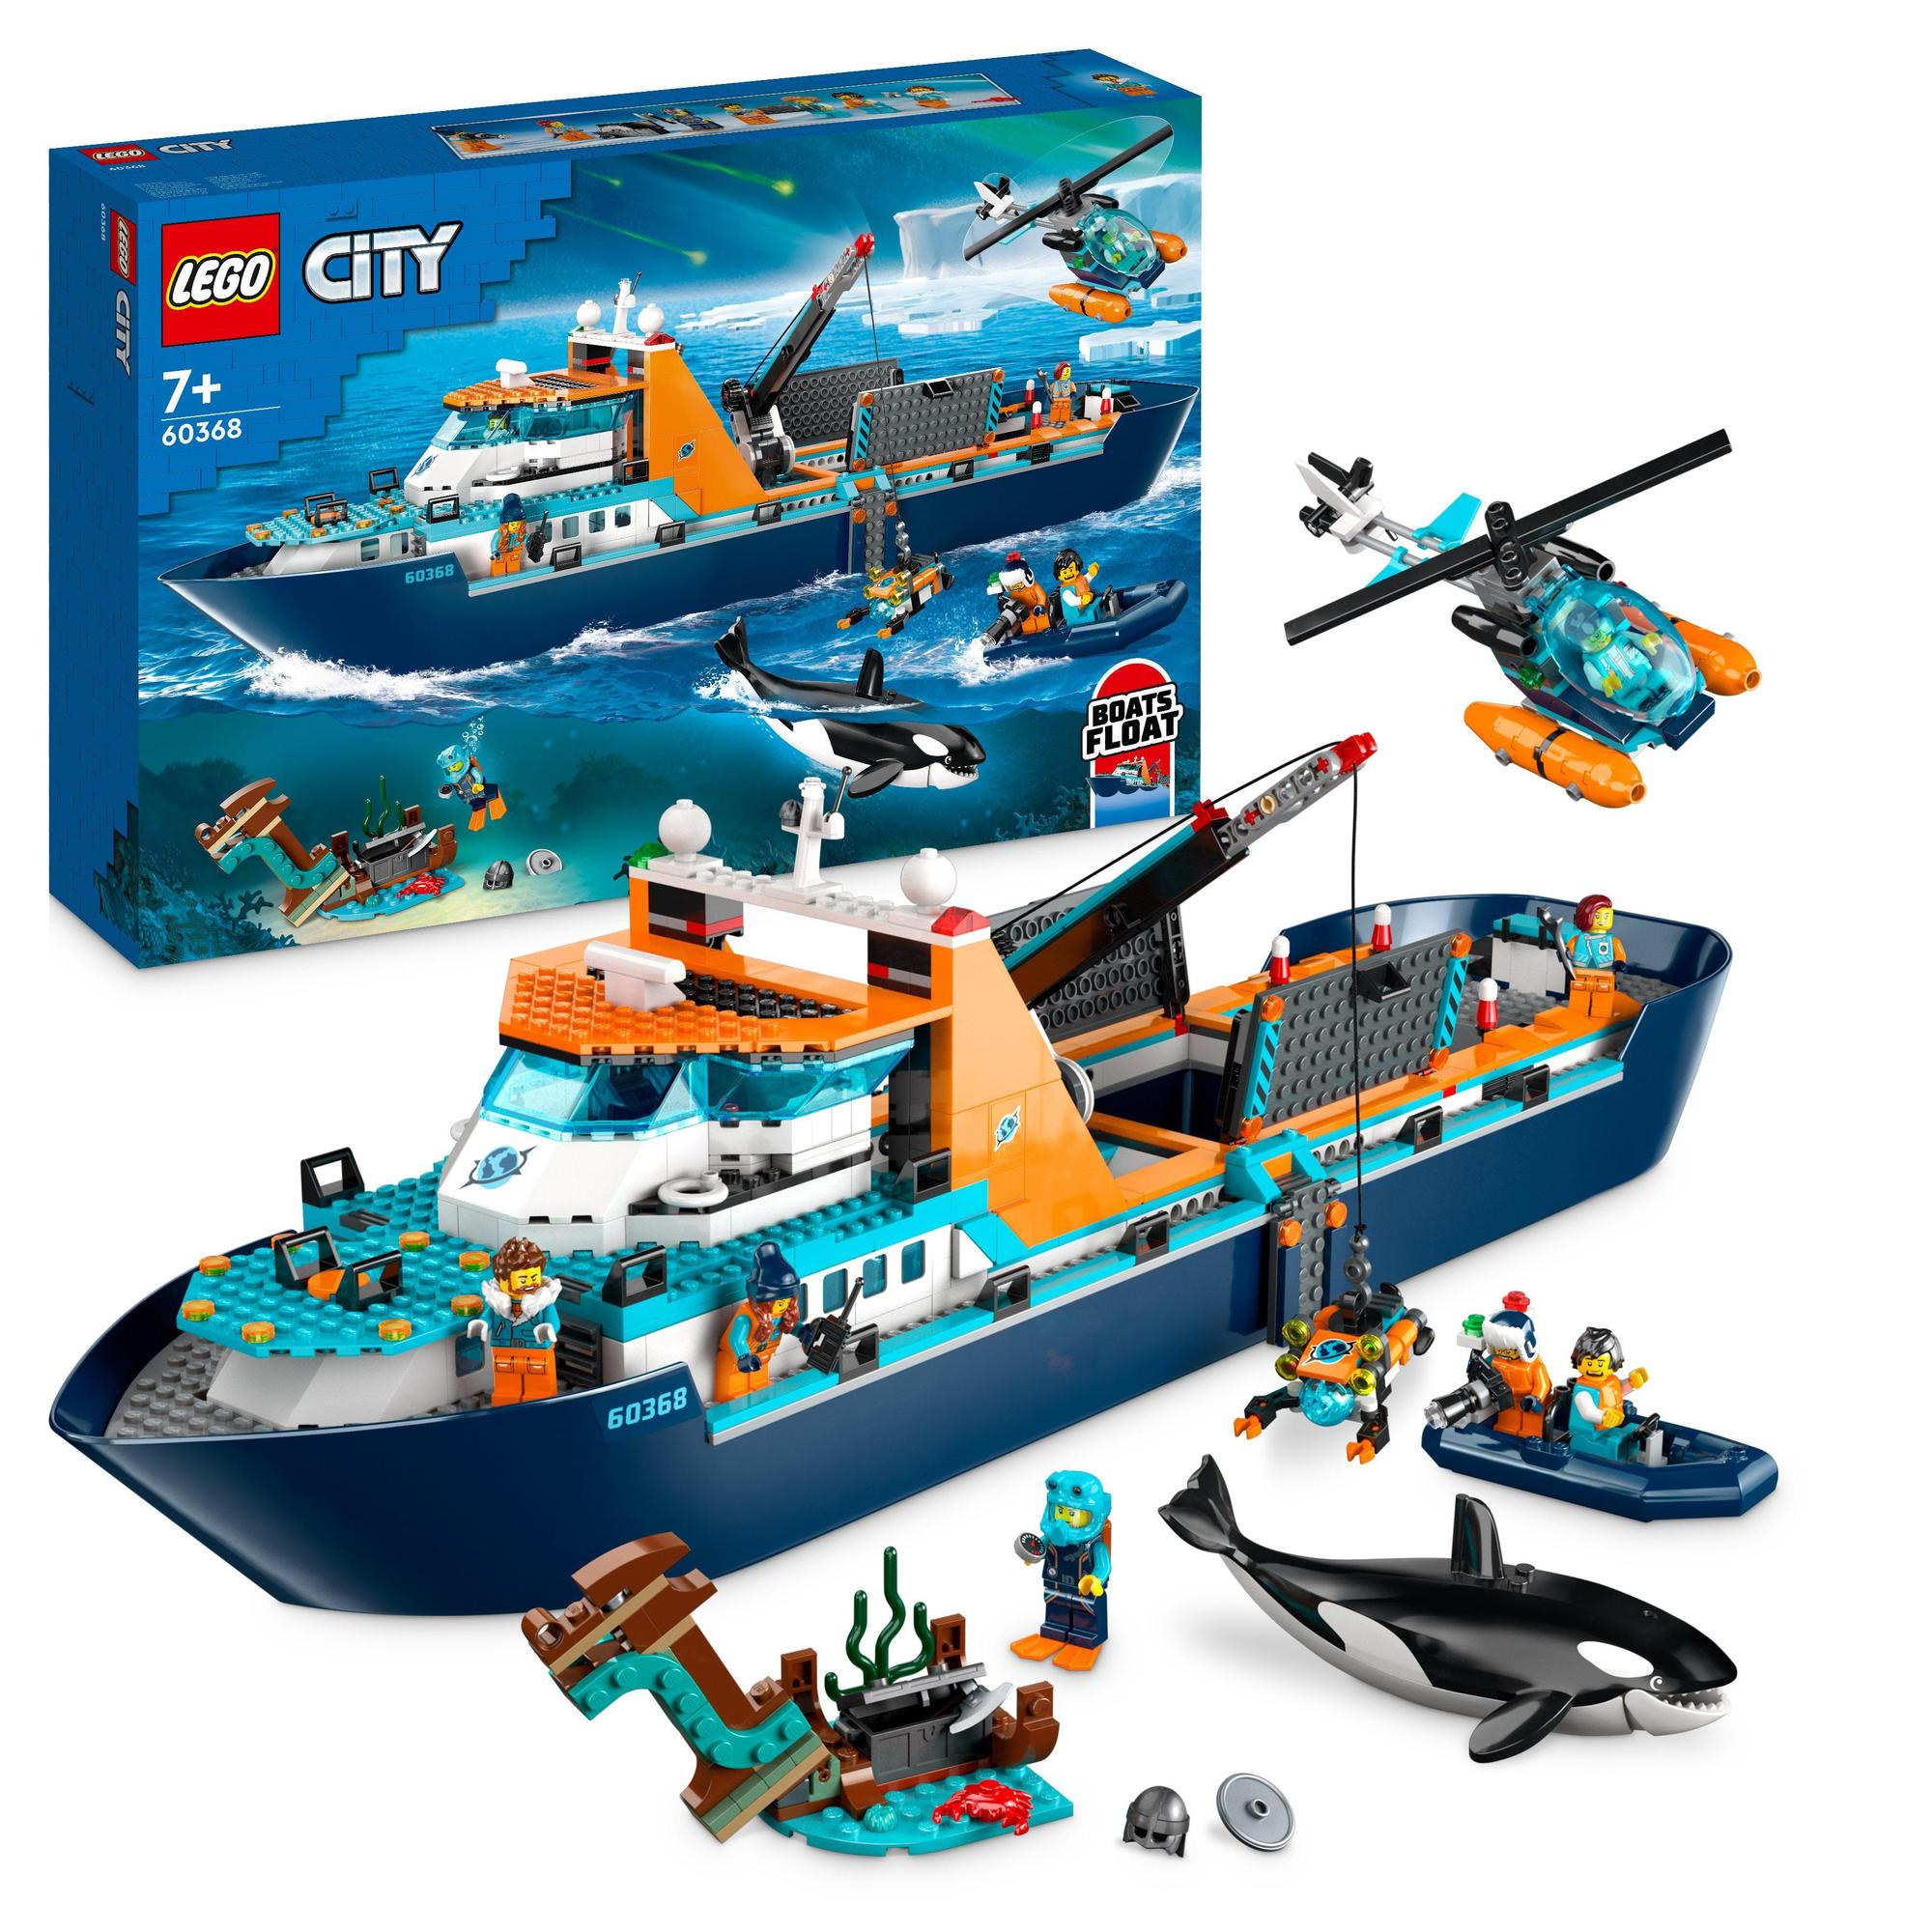 LEGO® | 60368 | Arktis-Forschungsschiff